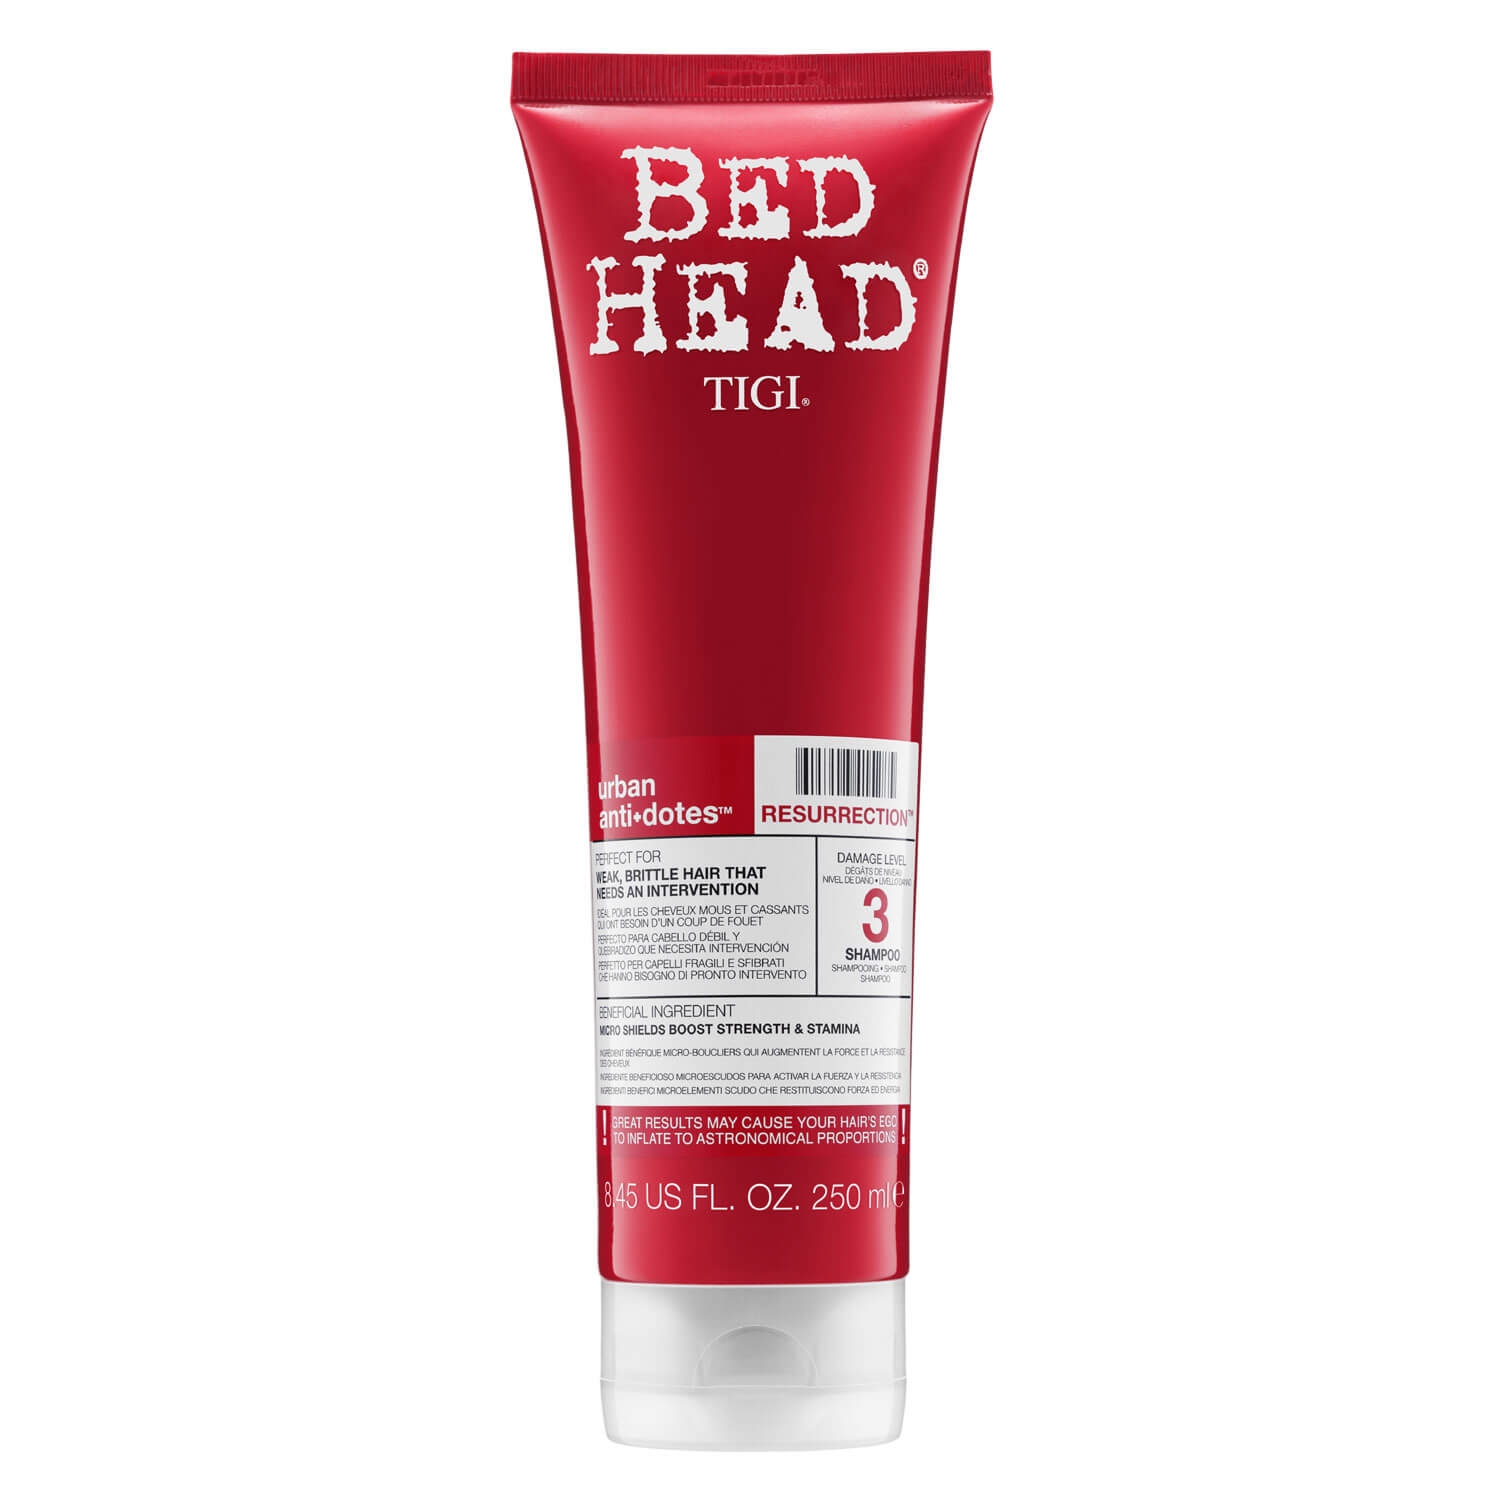 Produktbild von Bed Head Urban Antidotes - Resurrection Shampoo